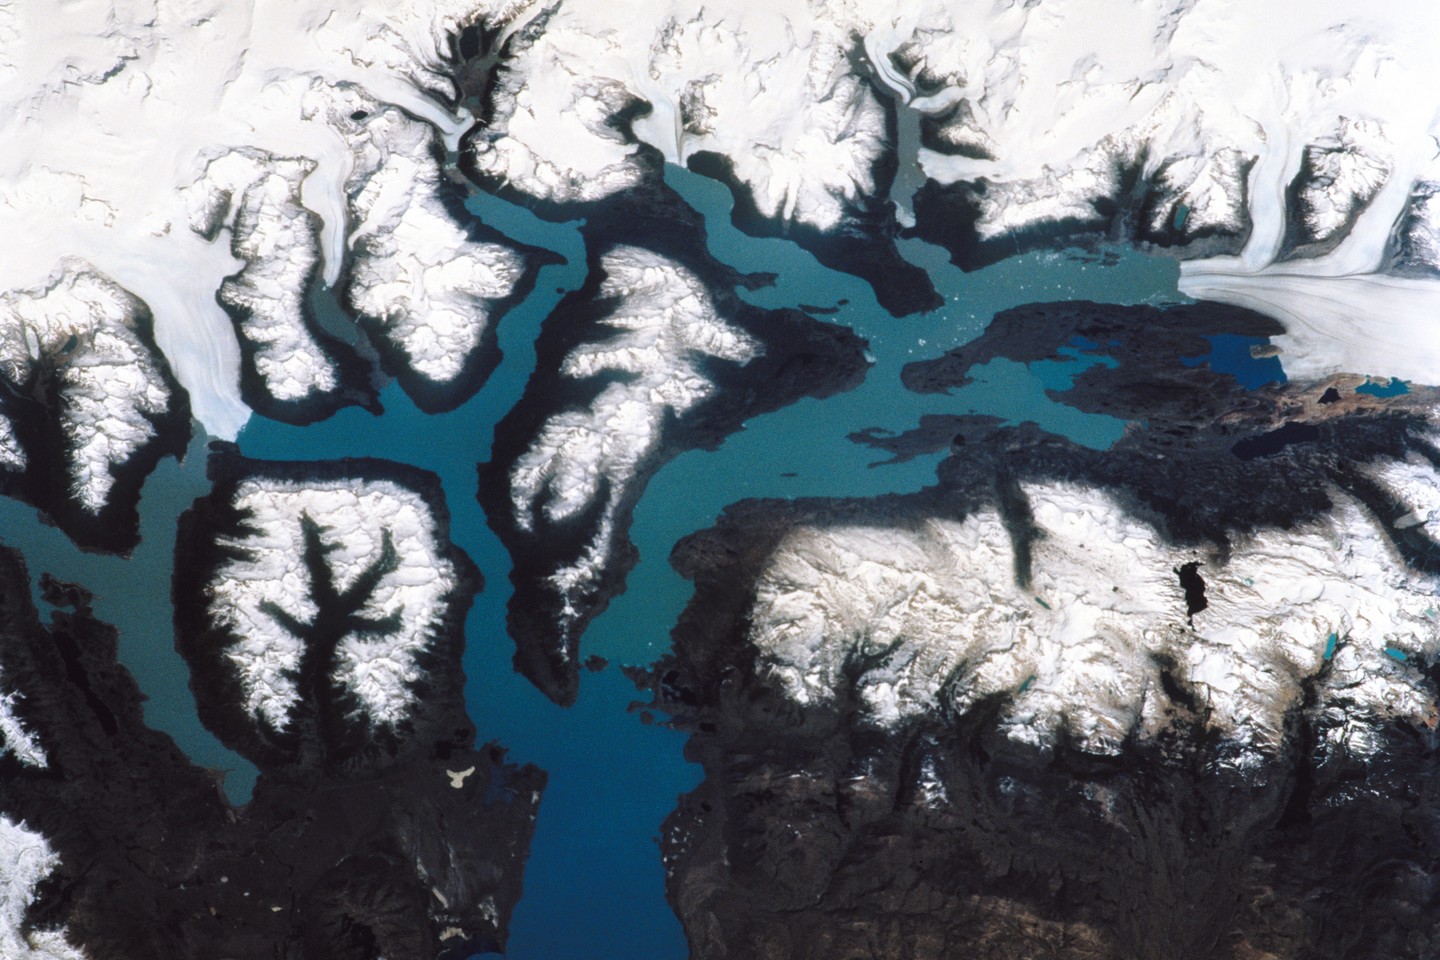  Pietų Amerikoje esantis Ledynų nacionalinis parkas - vienas didžiausių pasaulyje.<br> Wikipedia nuotr.